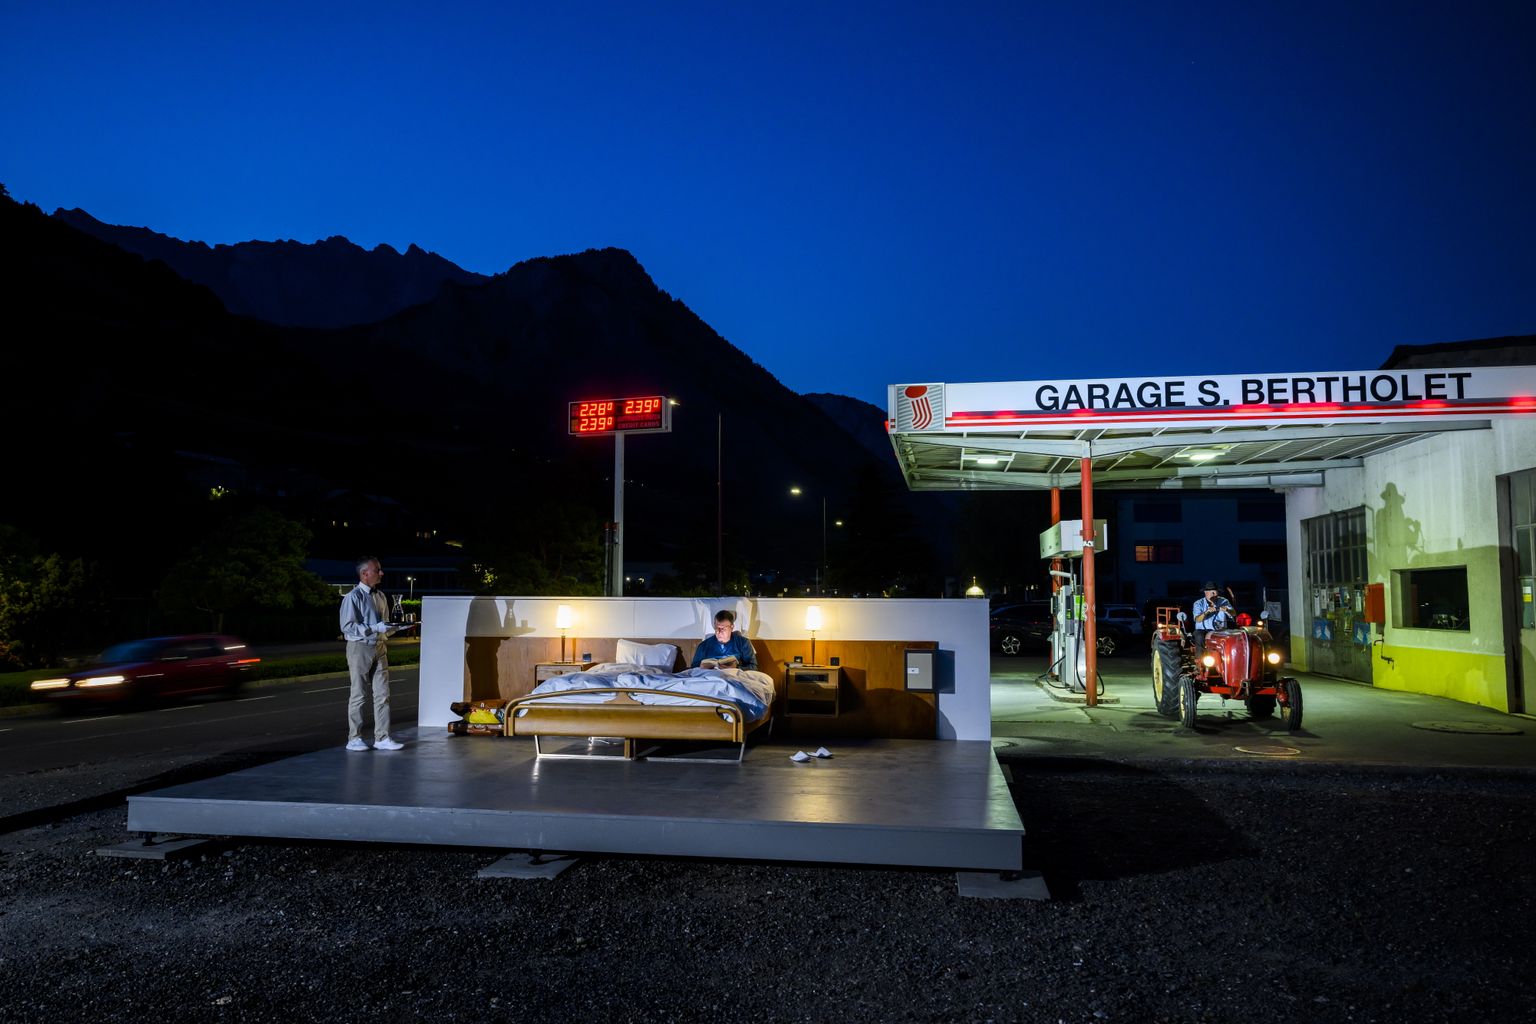 Šveitsi lõunaosas Valais’ kantonis Sailloni külas asub lahtise taeva all «nulltärnihotell», kus saab öö veeta, kuid samal ajal oma mõtetes või kaaslasega arutada maailma probleeme. Projekti taga on šveitslastest kaksikvennad Frank ja Patrik Riklin